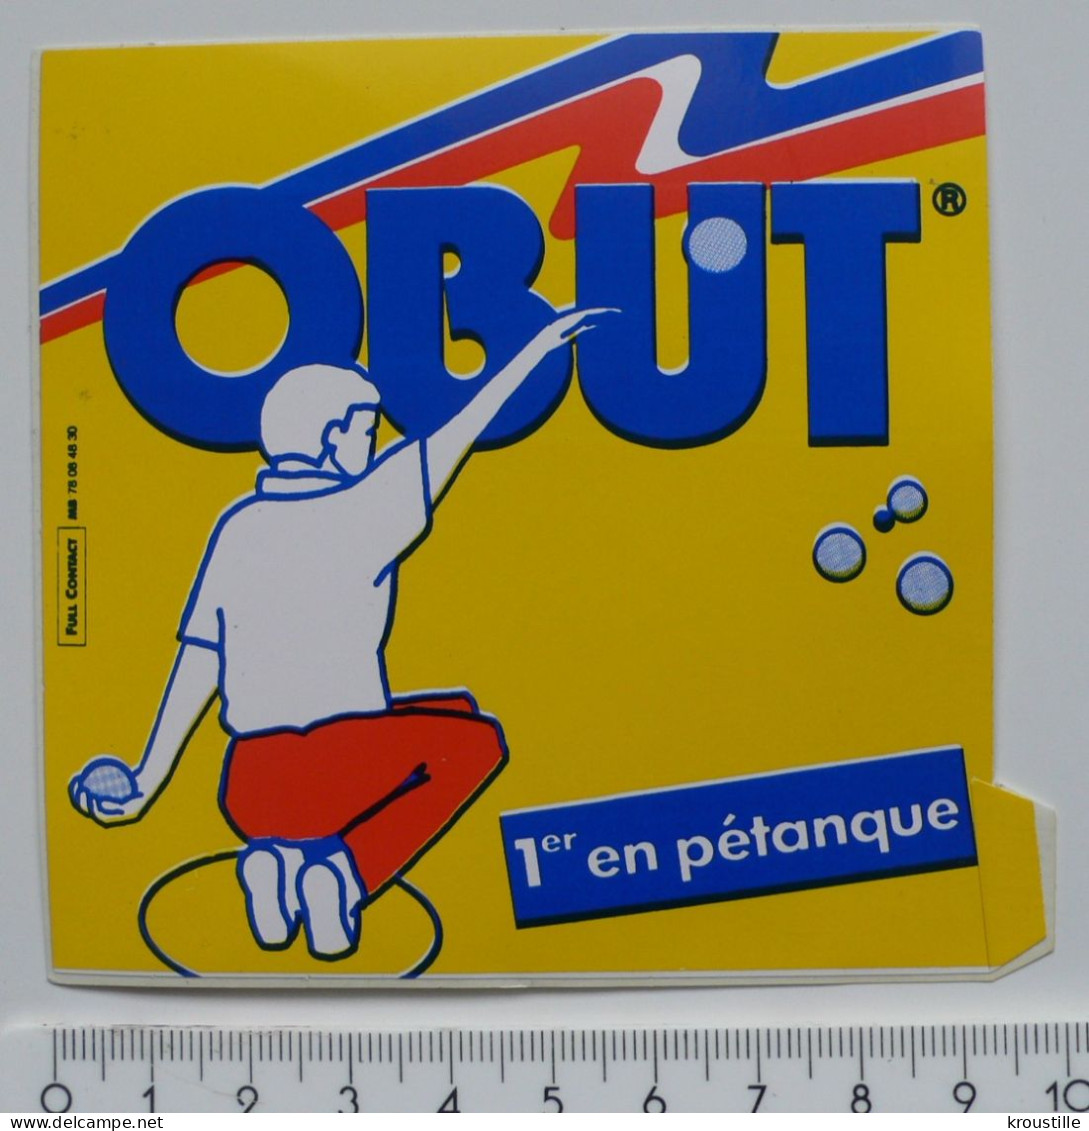 AUTOCOLLANT OBUT - 1er EN PETANQUE - Stickers